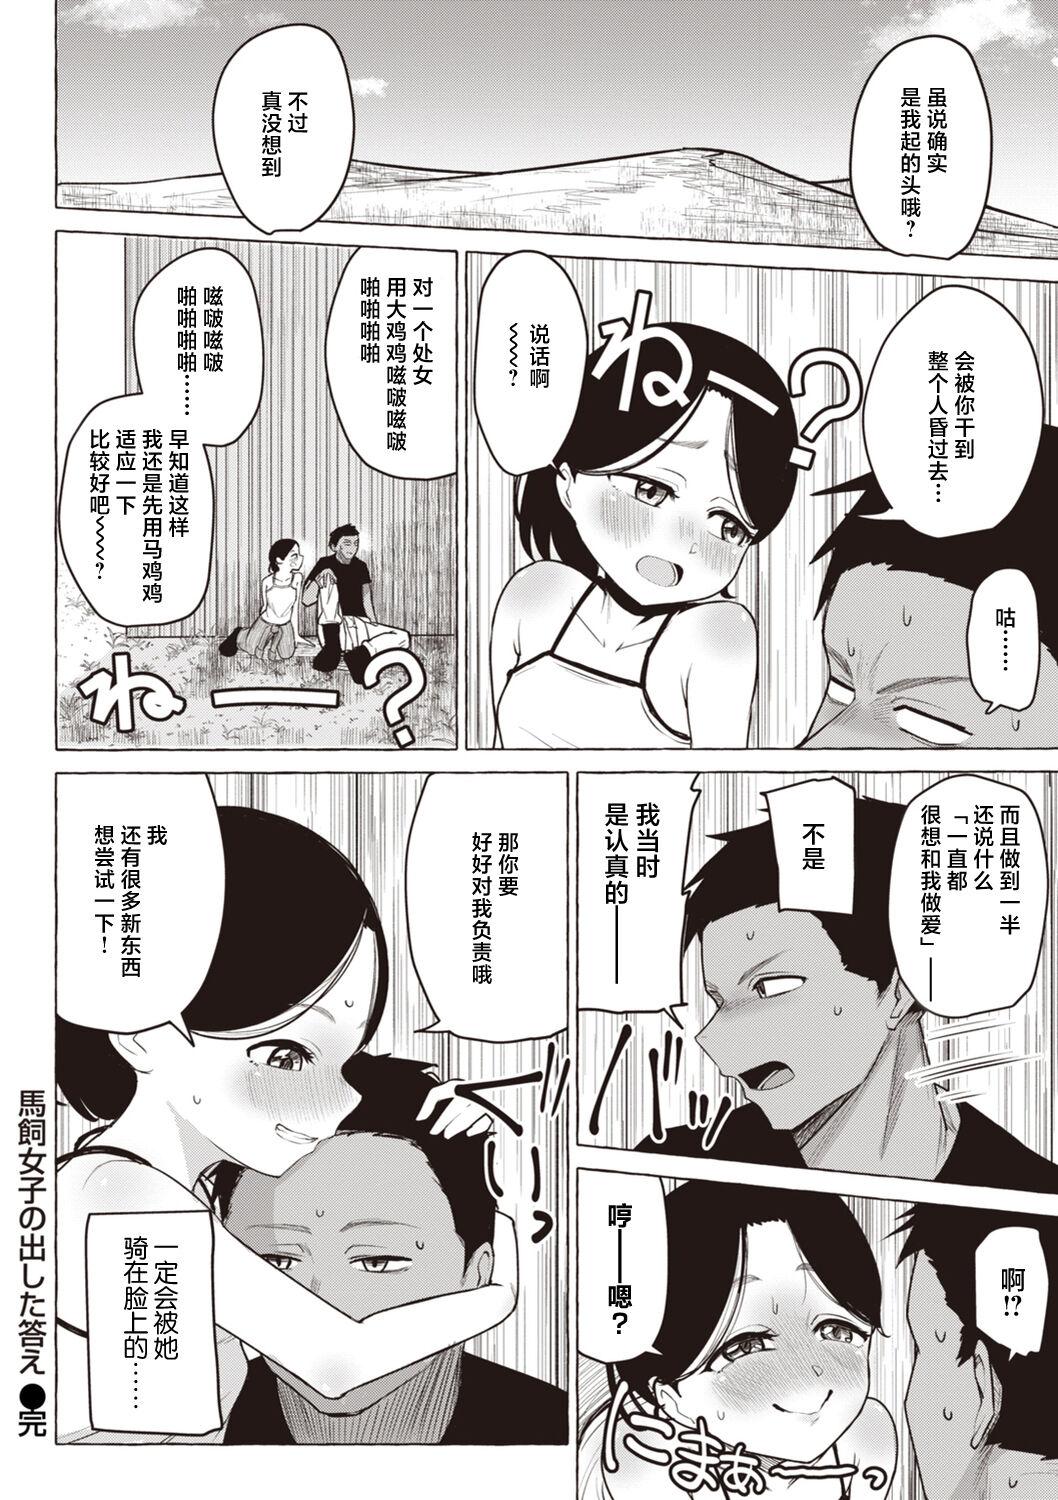 Sex Tanoshii - Let's enjoy Sexual activity. + Tenshi to Kabuka + Umakai Joshi no Dashita Kotae 208